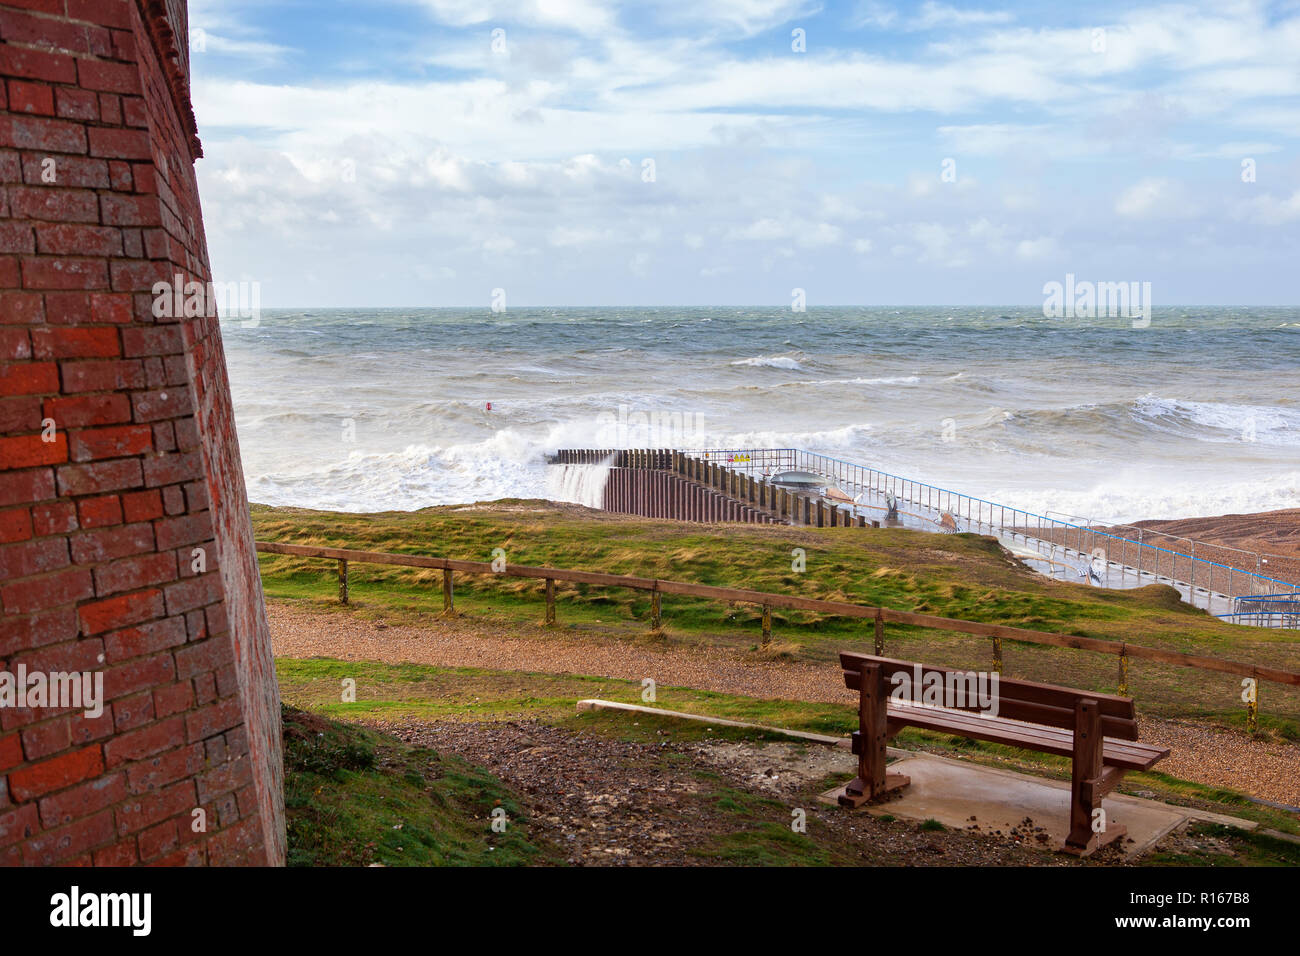 Vue sur mer agitée de Seaford plage, mer agitée, East Sussex, Angleterre Banque D'Images